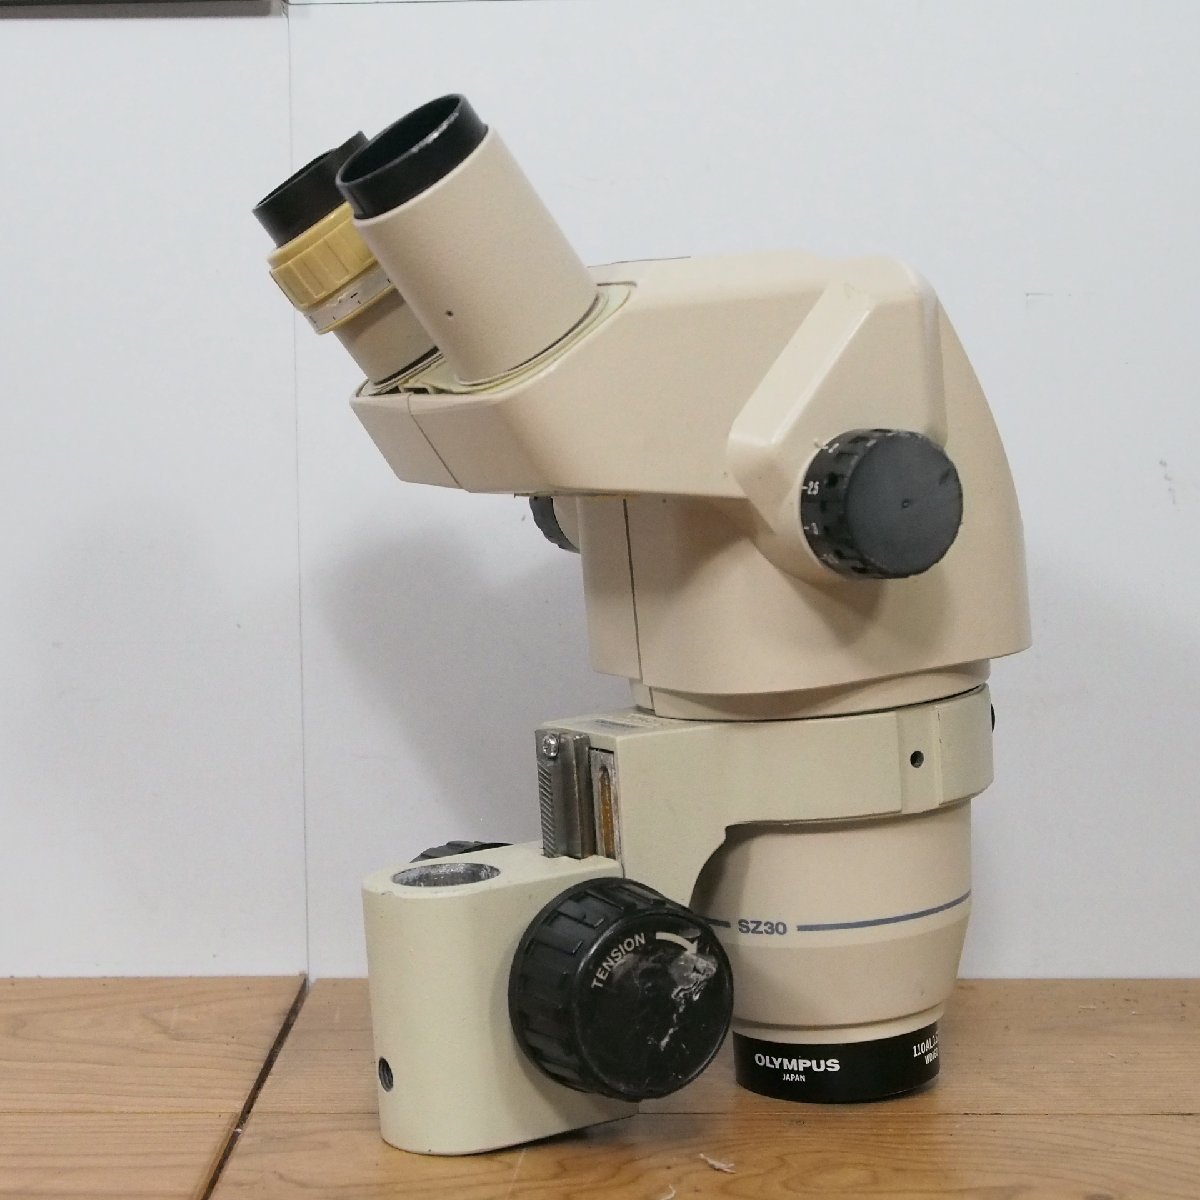 ☆【1W0202-1@】 OLYMPUS オリンパス 双眼顕微鏡ヘッドパーツ SZ30③ ジャンク